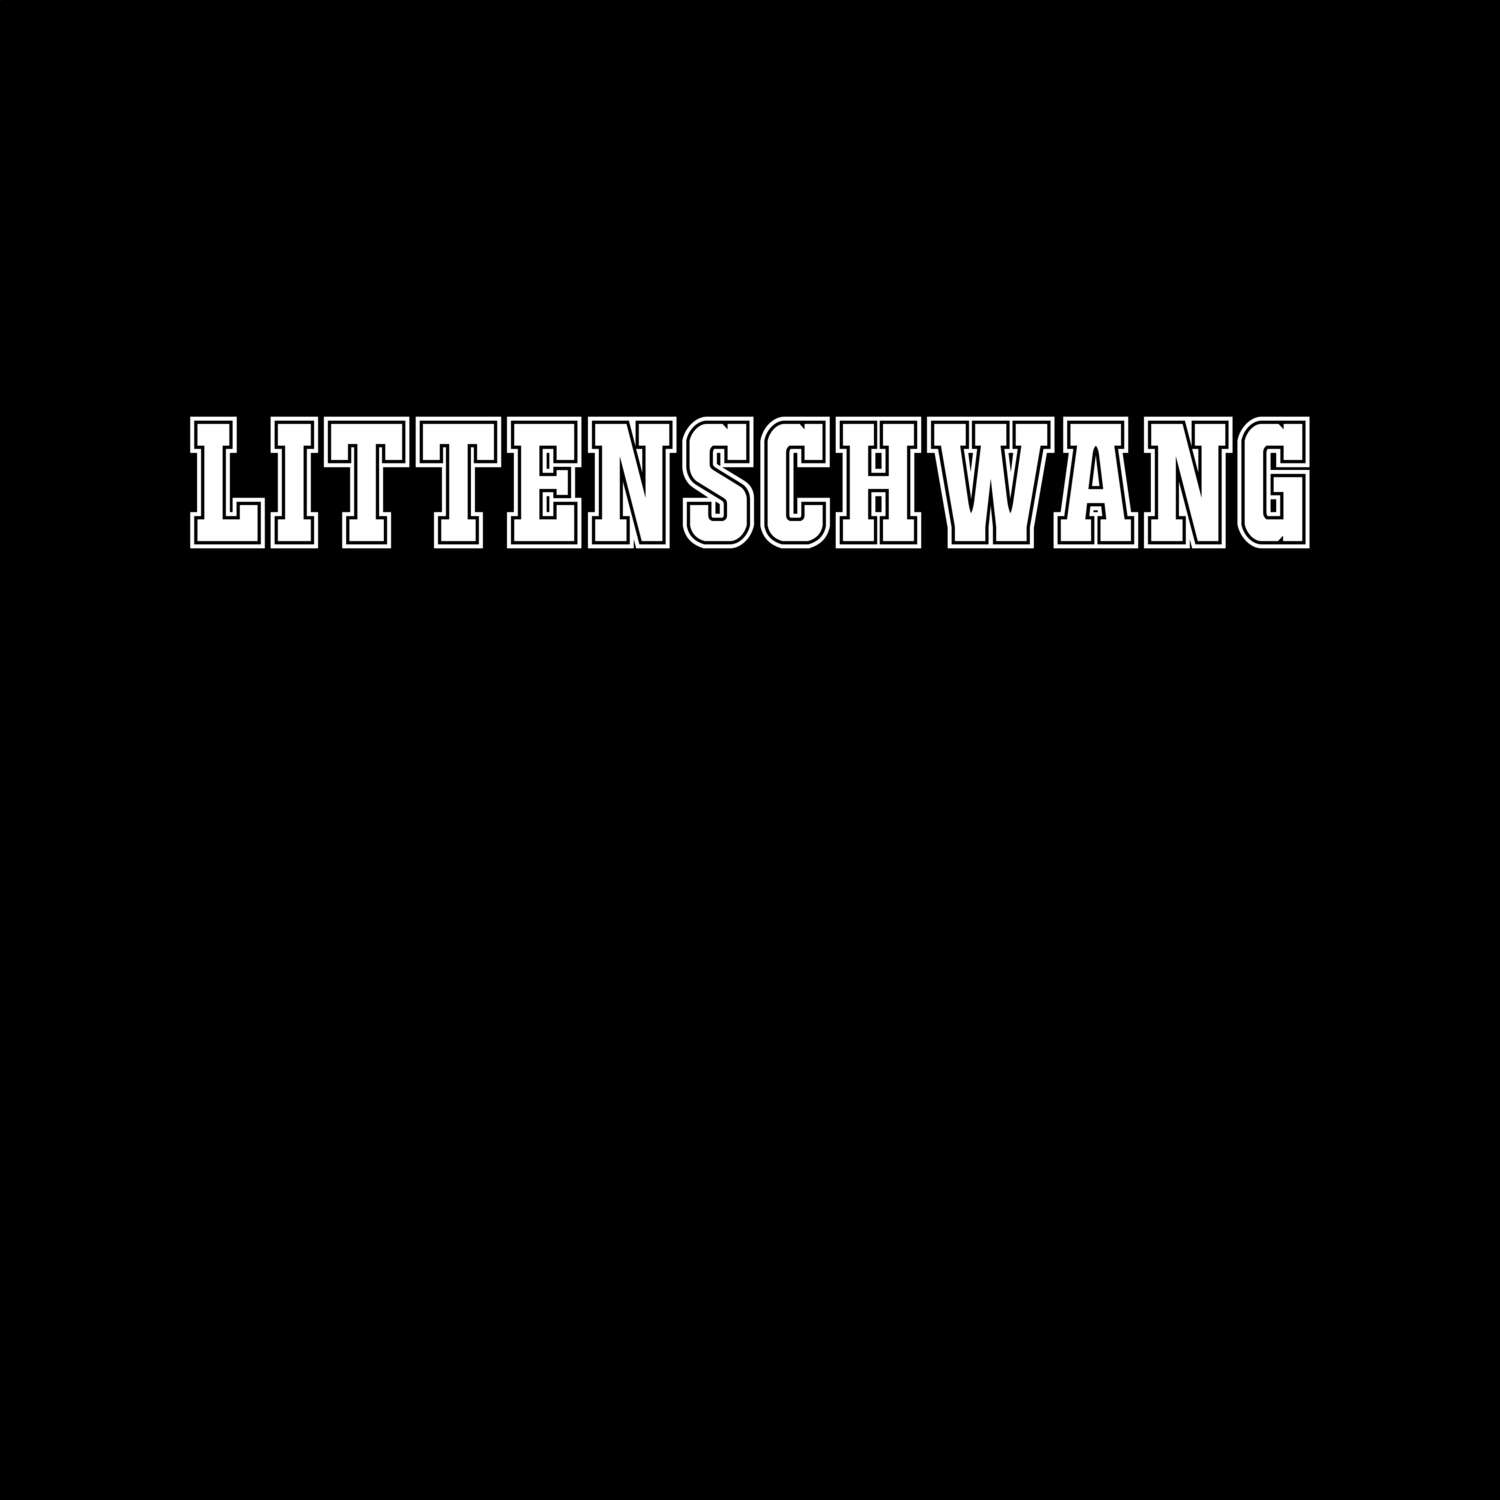 Littenschwang T-Shirt »Classic«